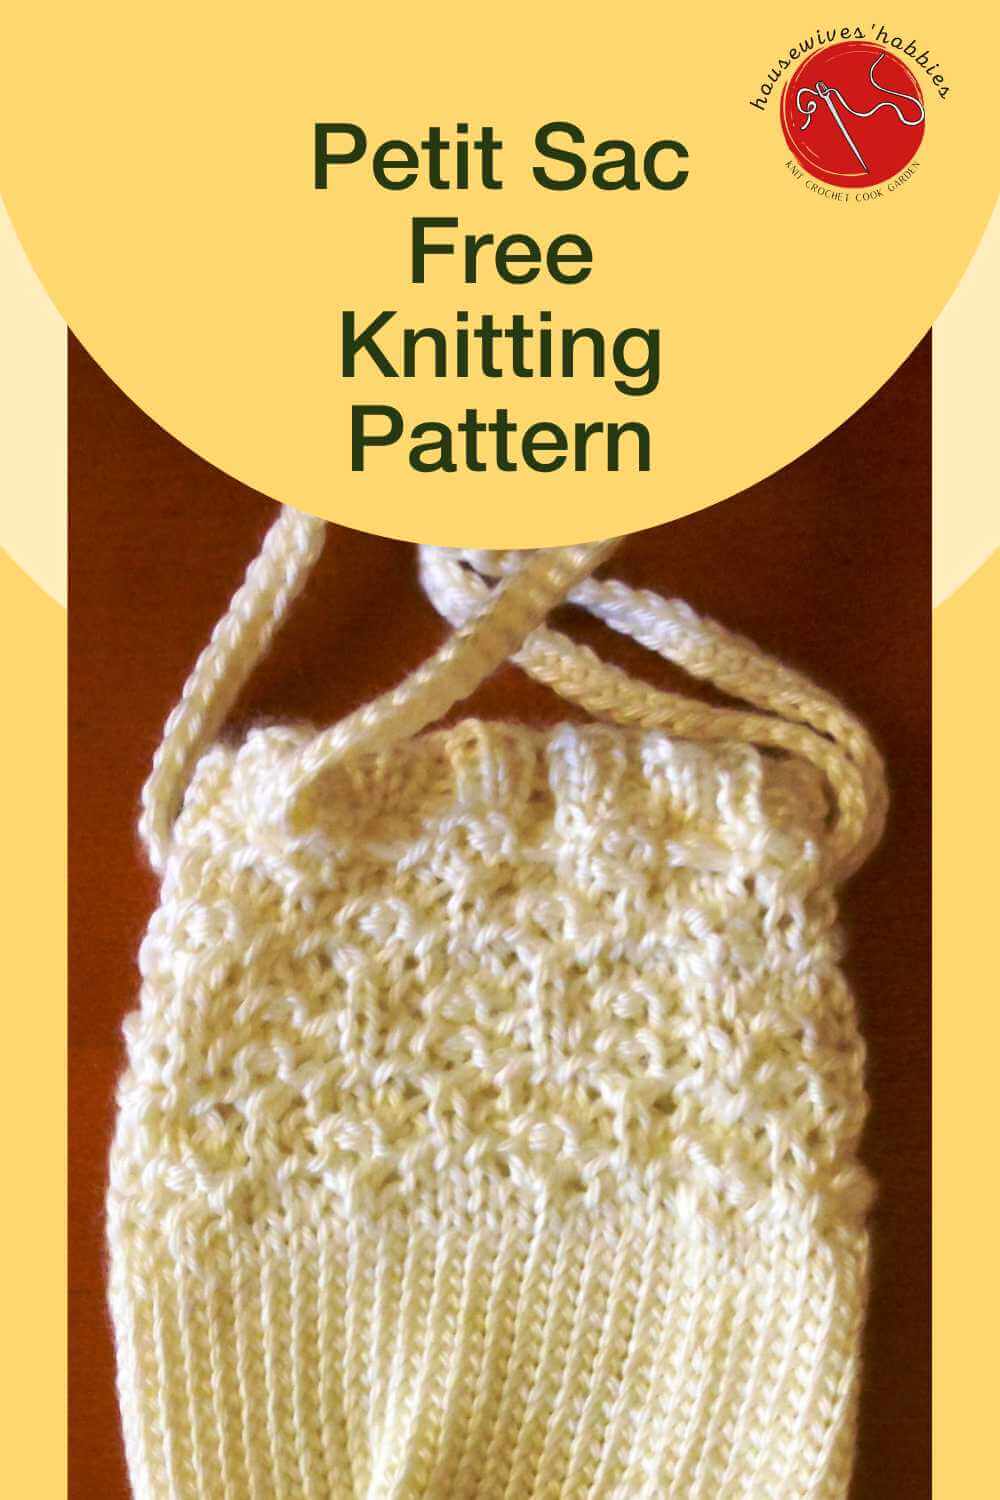 Petit Sac Free Knitting Pattern